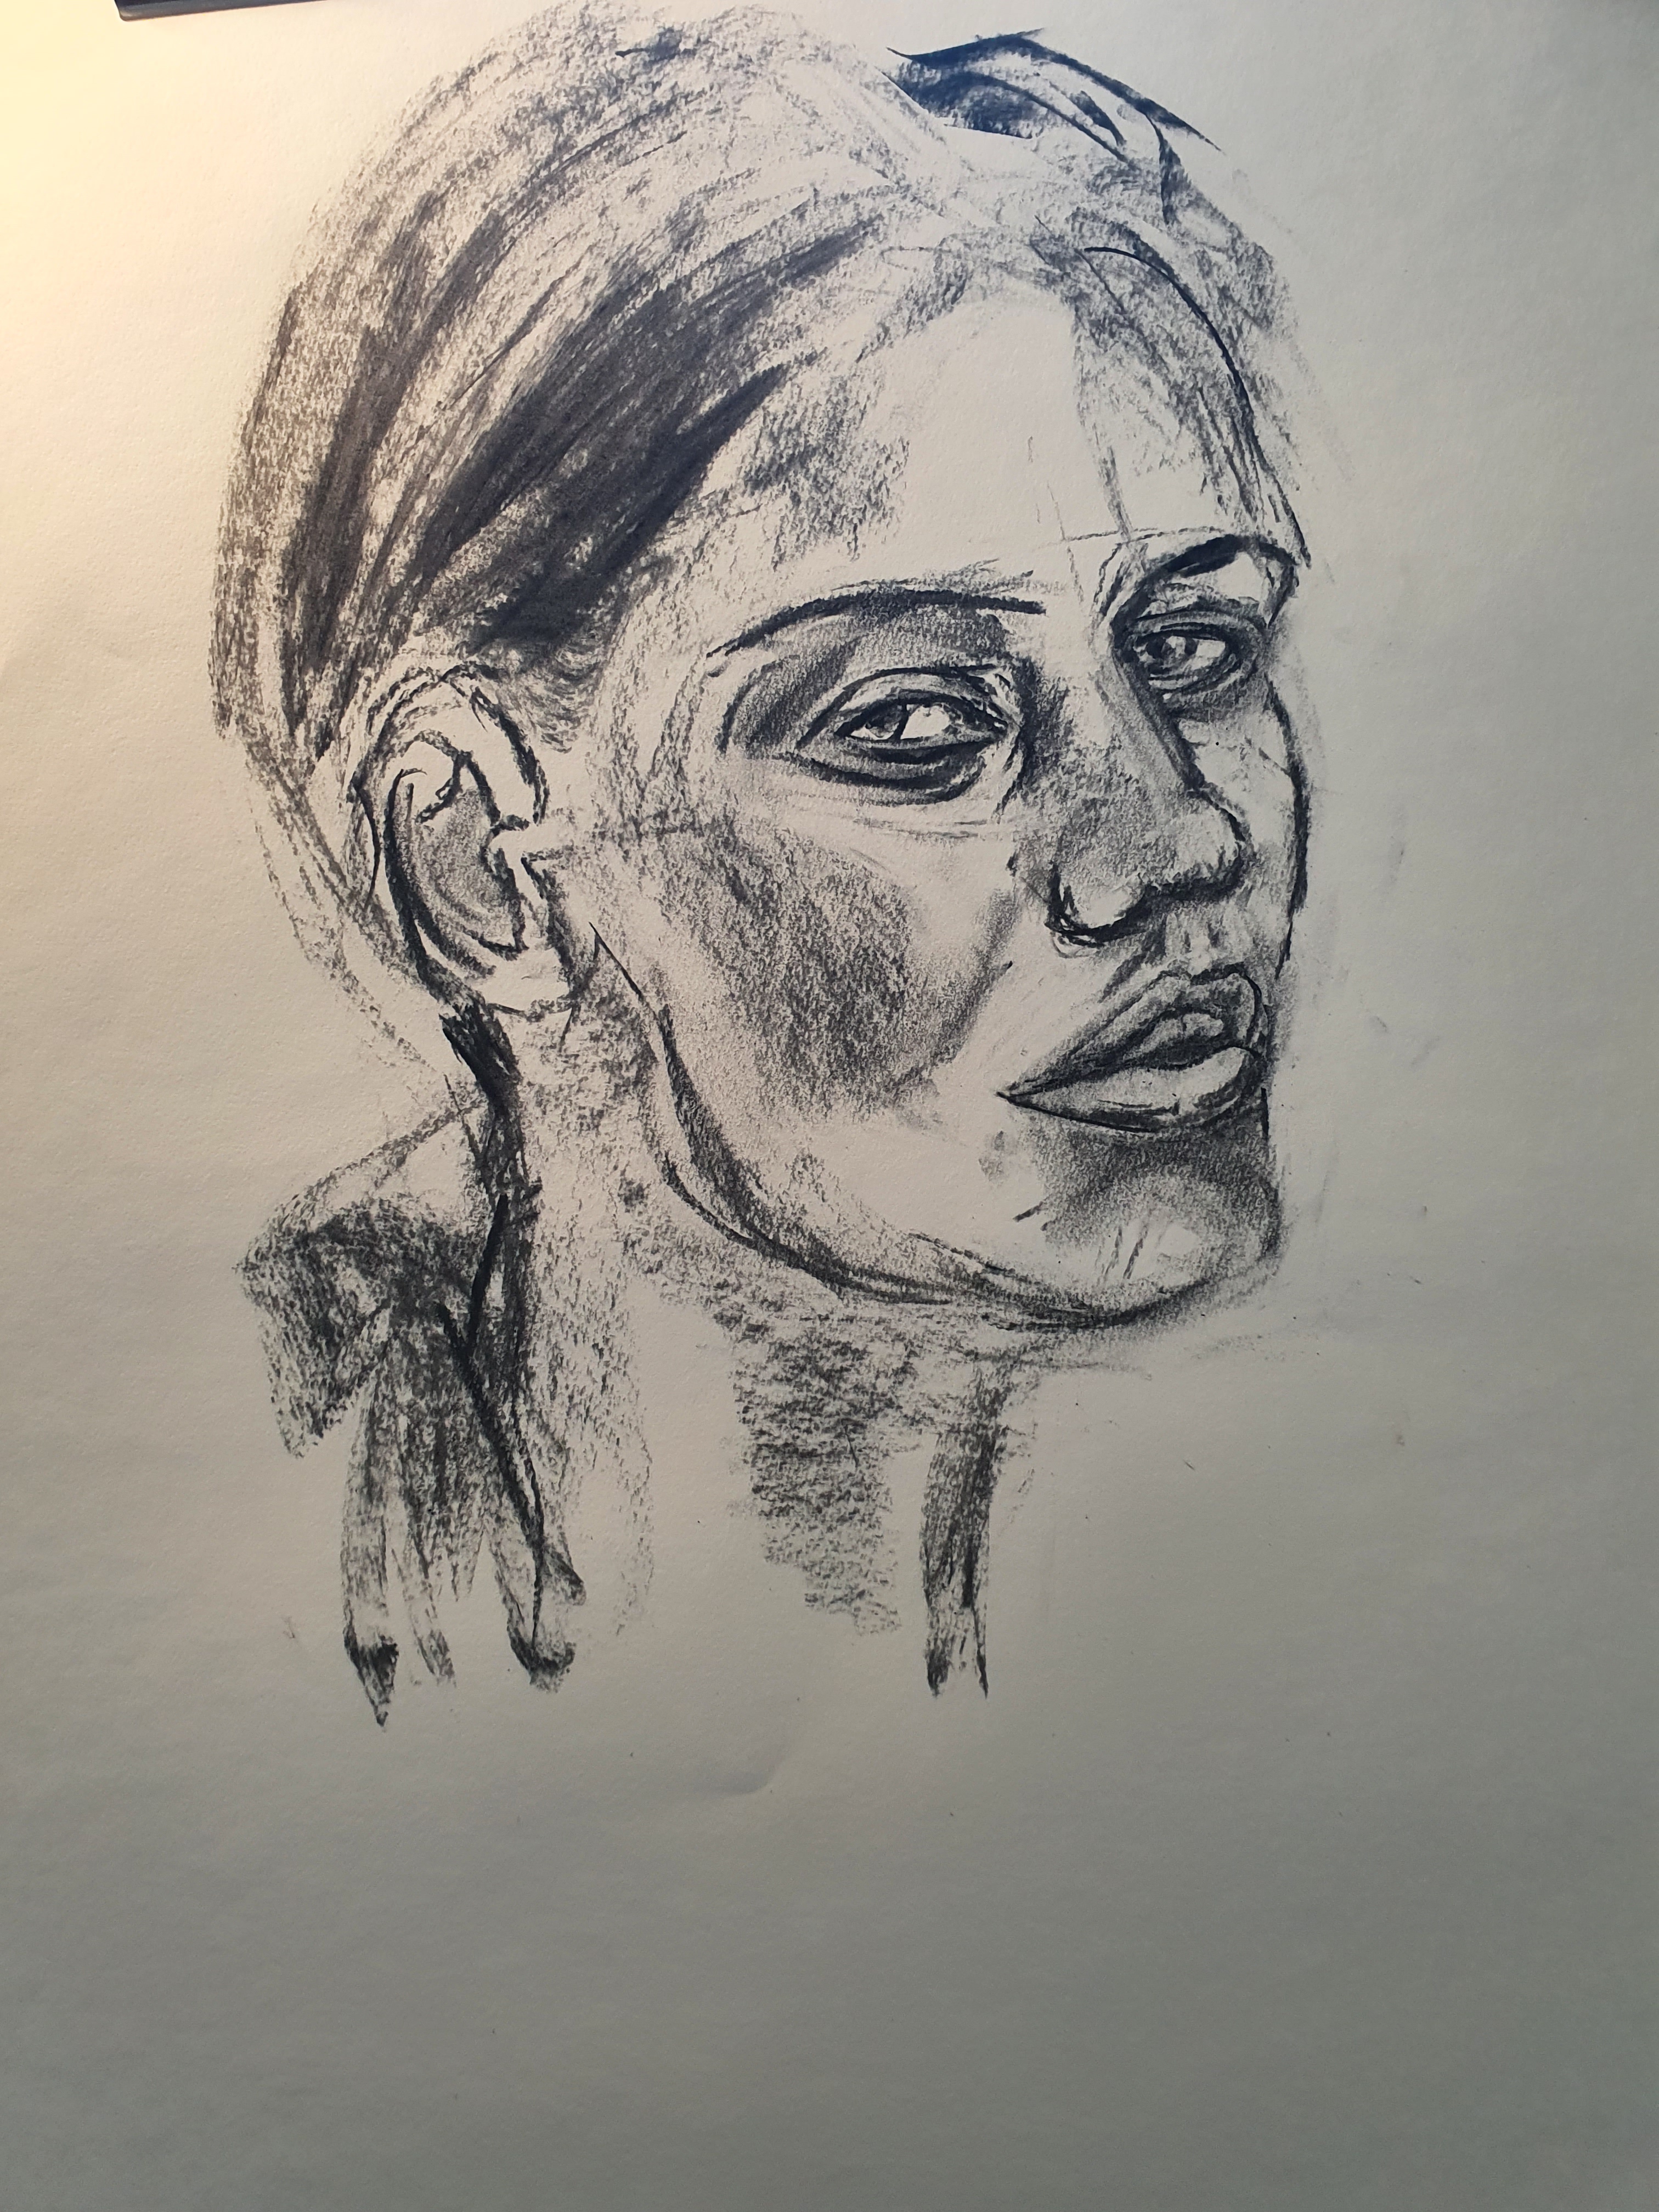  Portraits au fusain sur papier visage  cours de dessin 